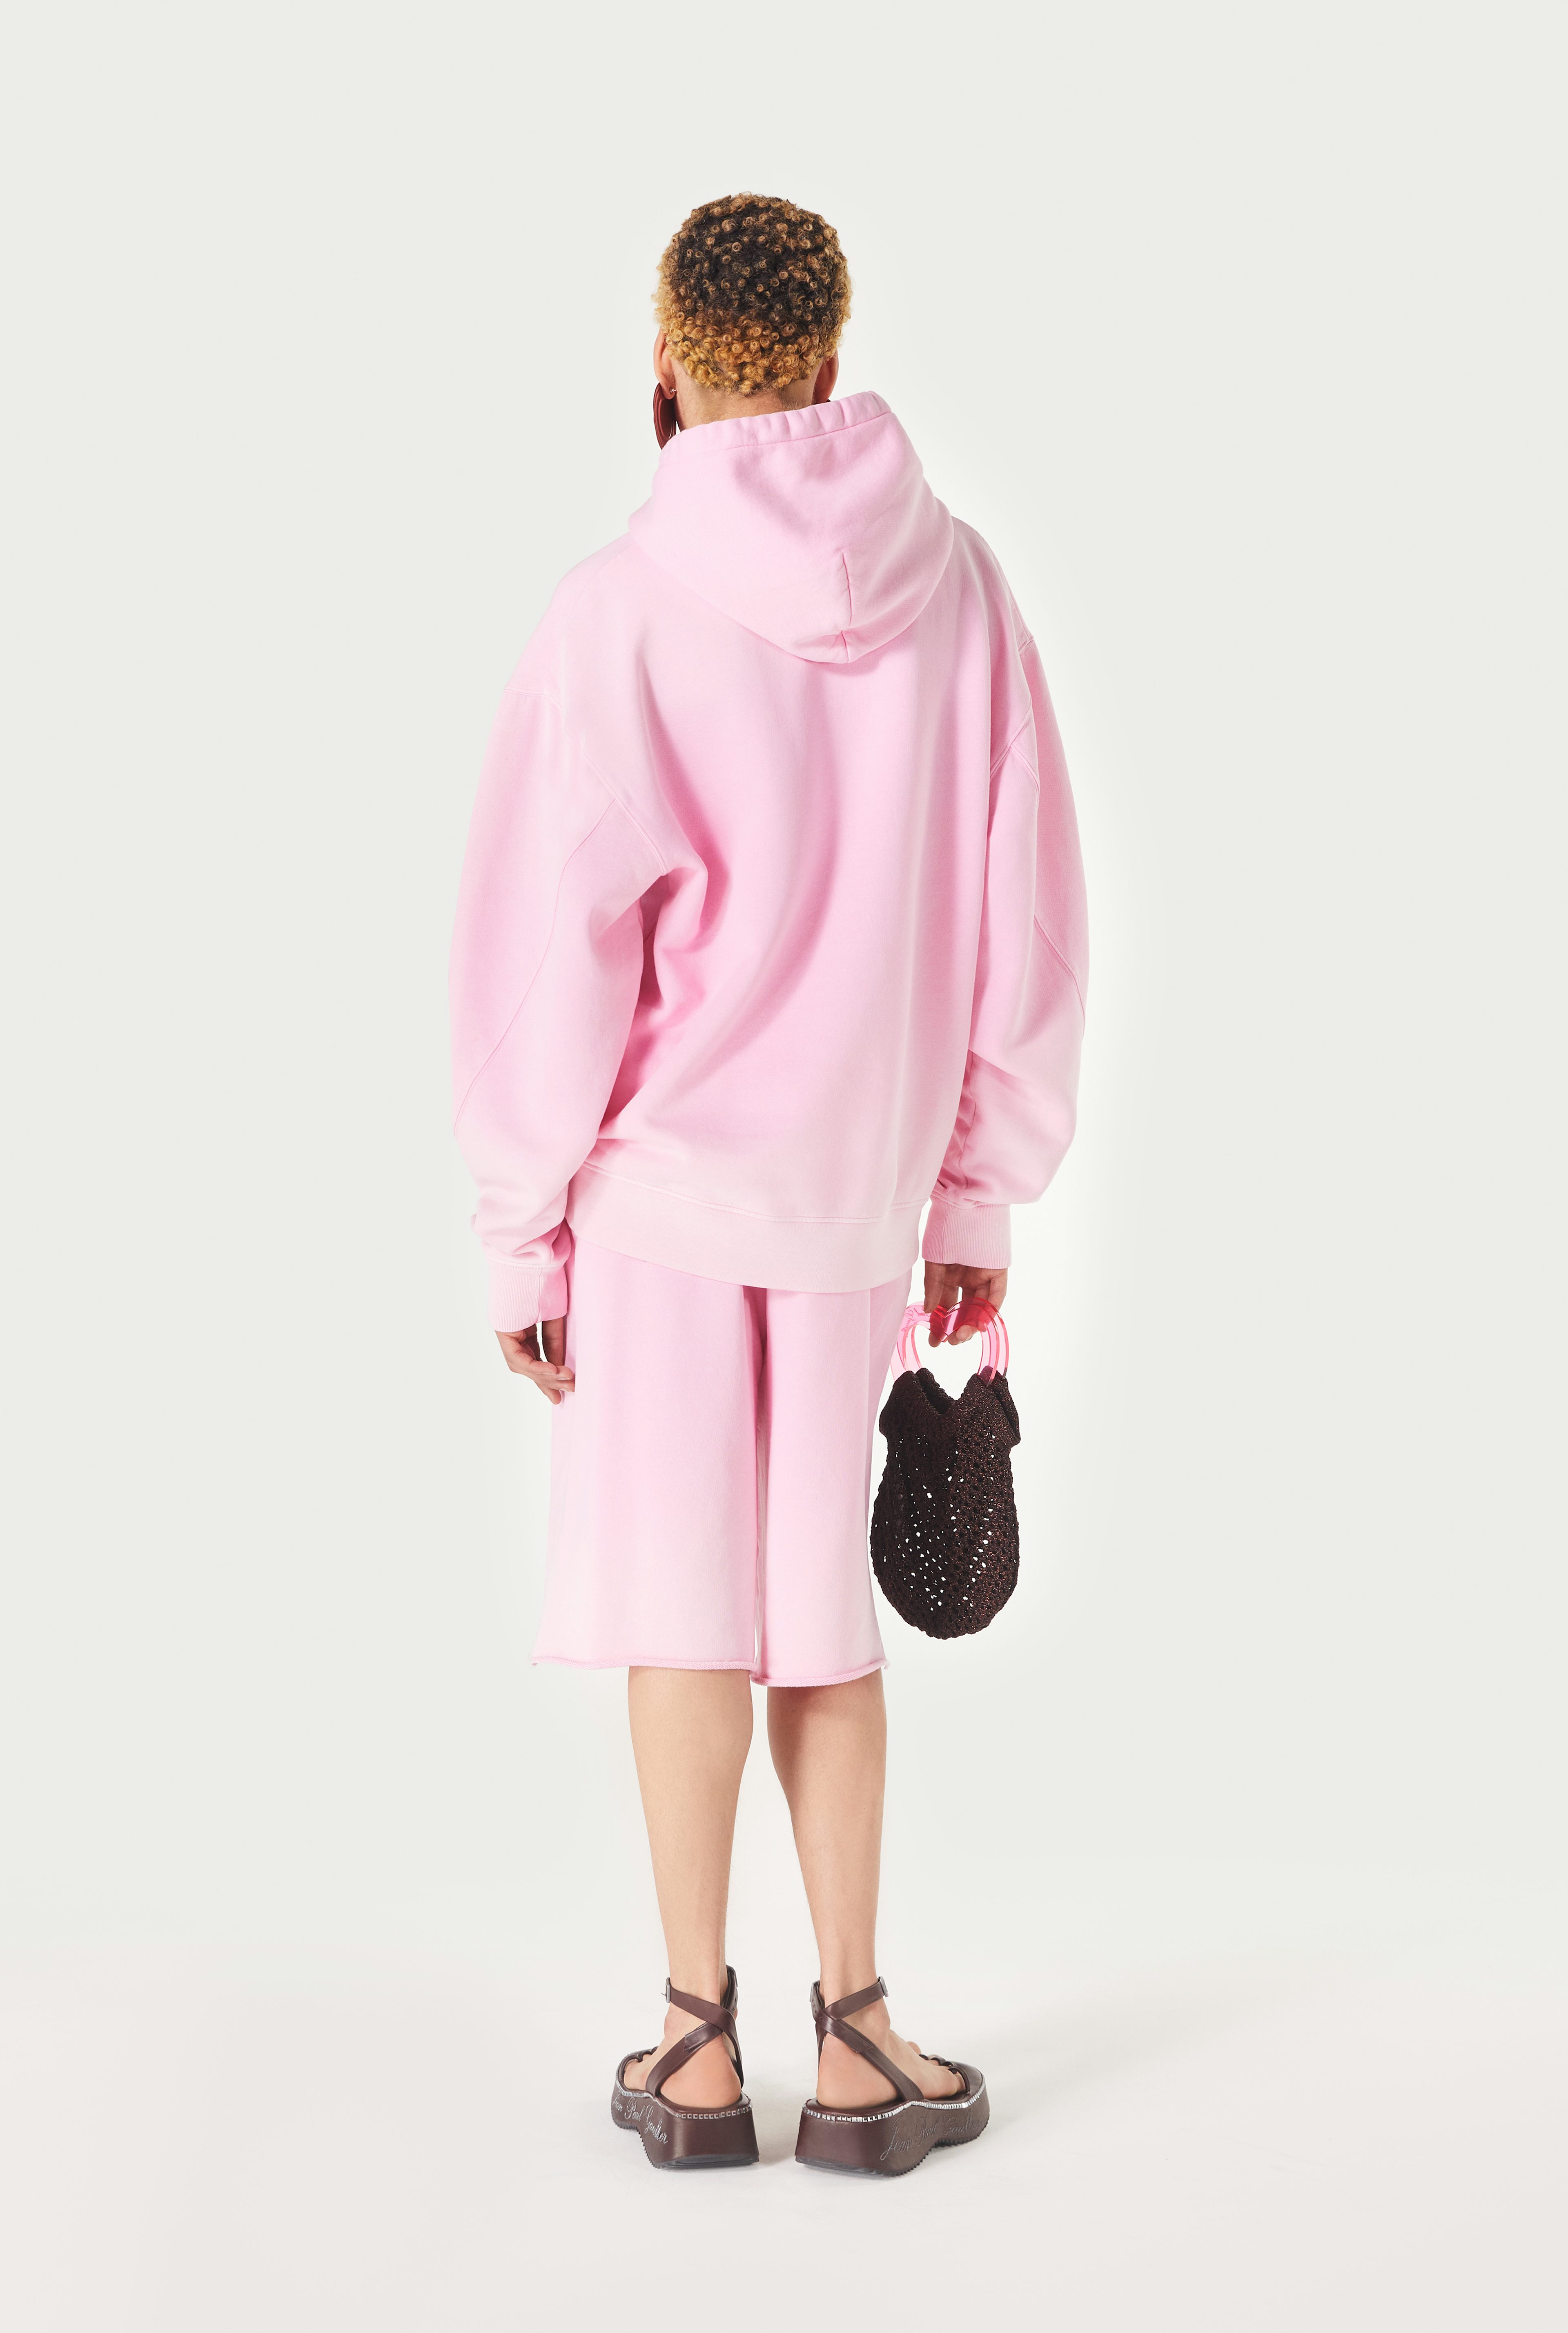 The Pink Hooded Évidemment Sweatshirt